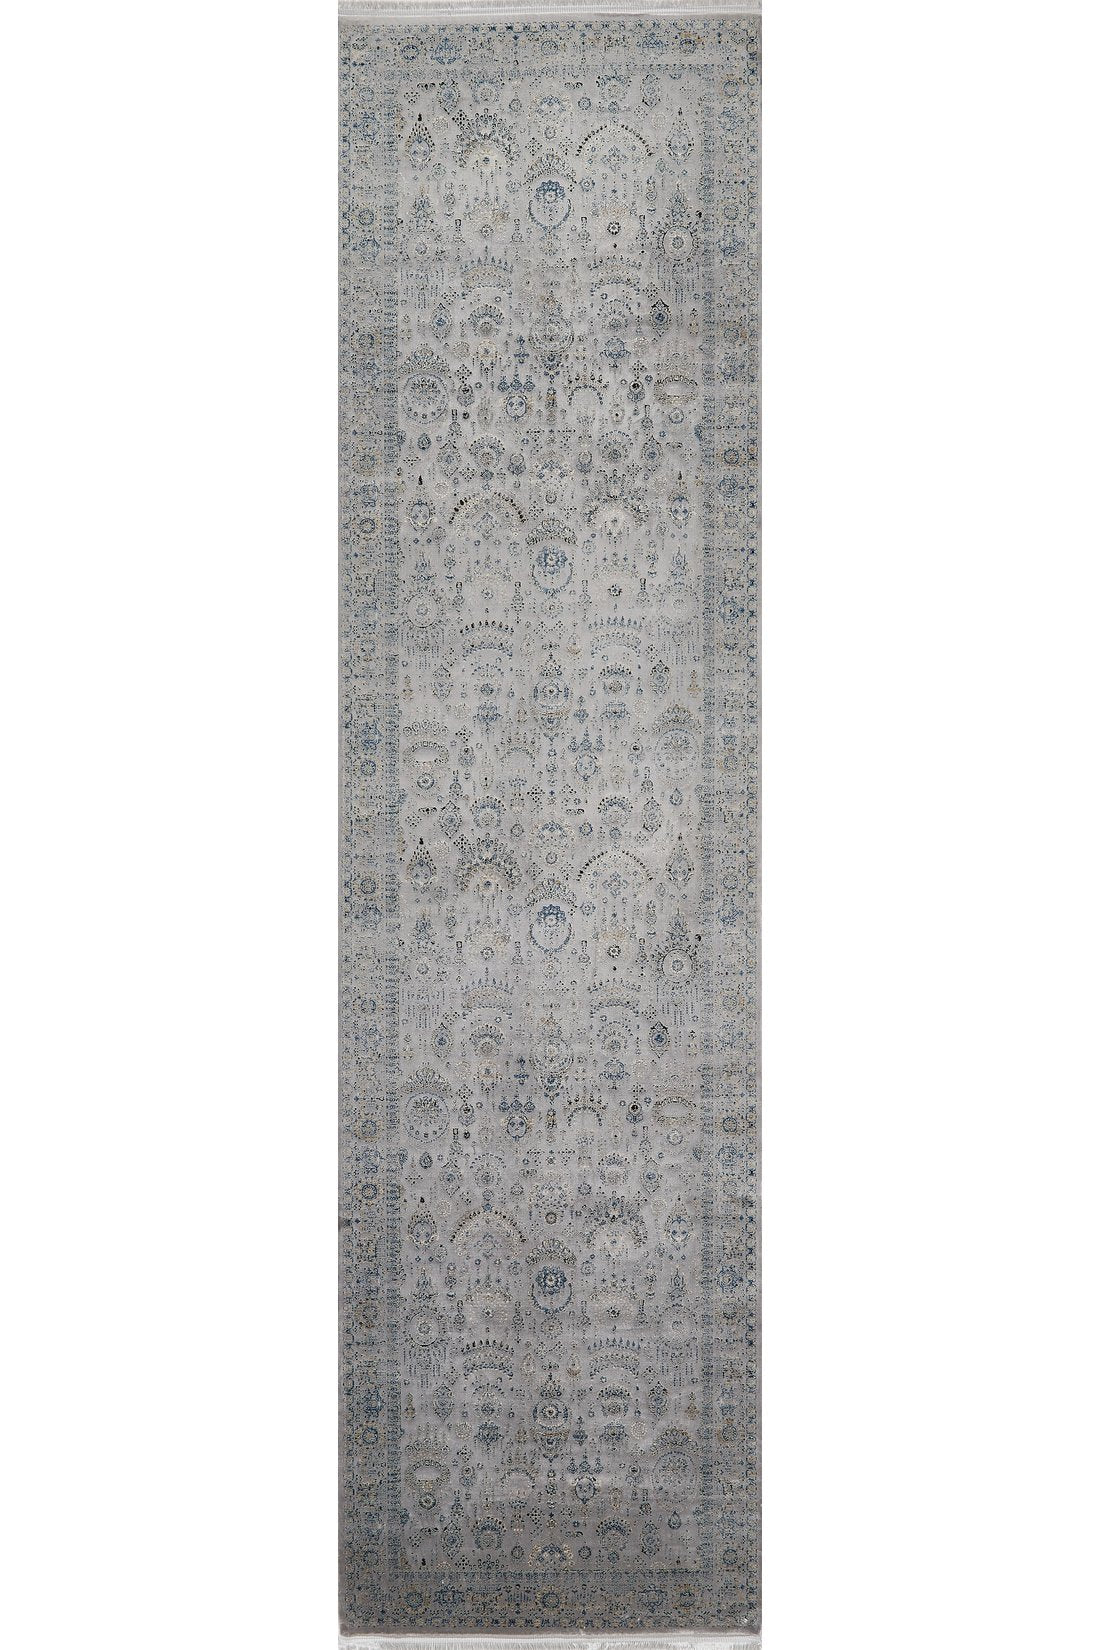 Ancestral Motifs Türkischer Teppich – 2225C 